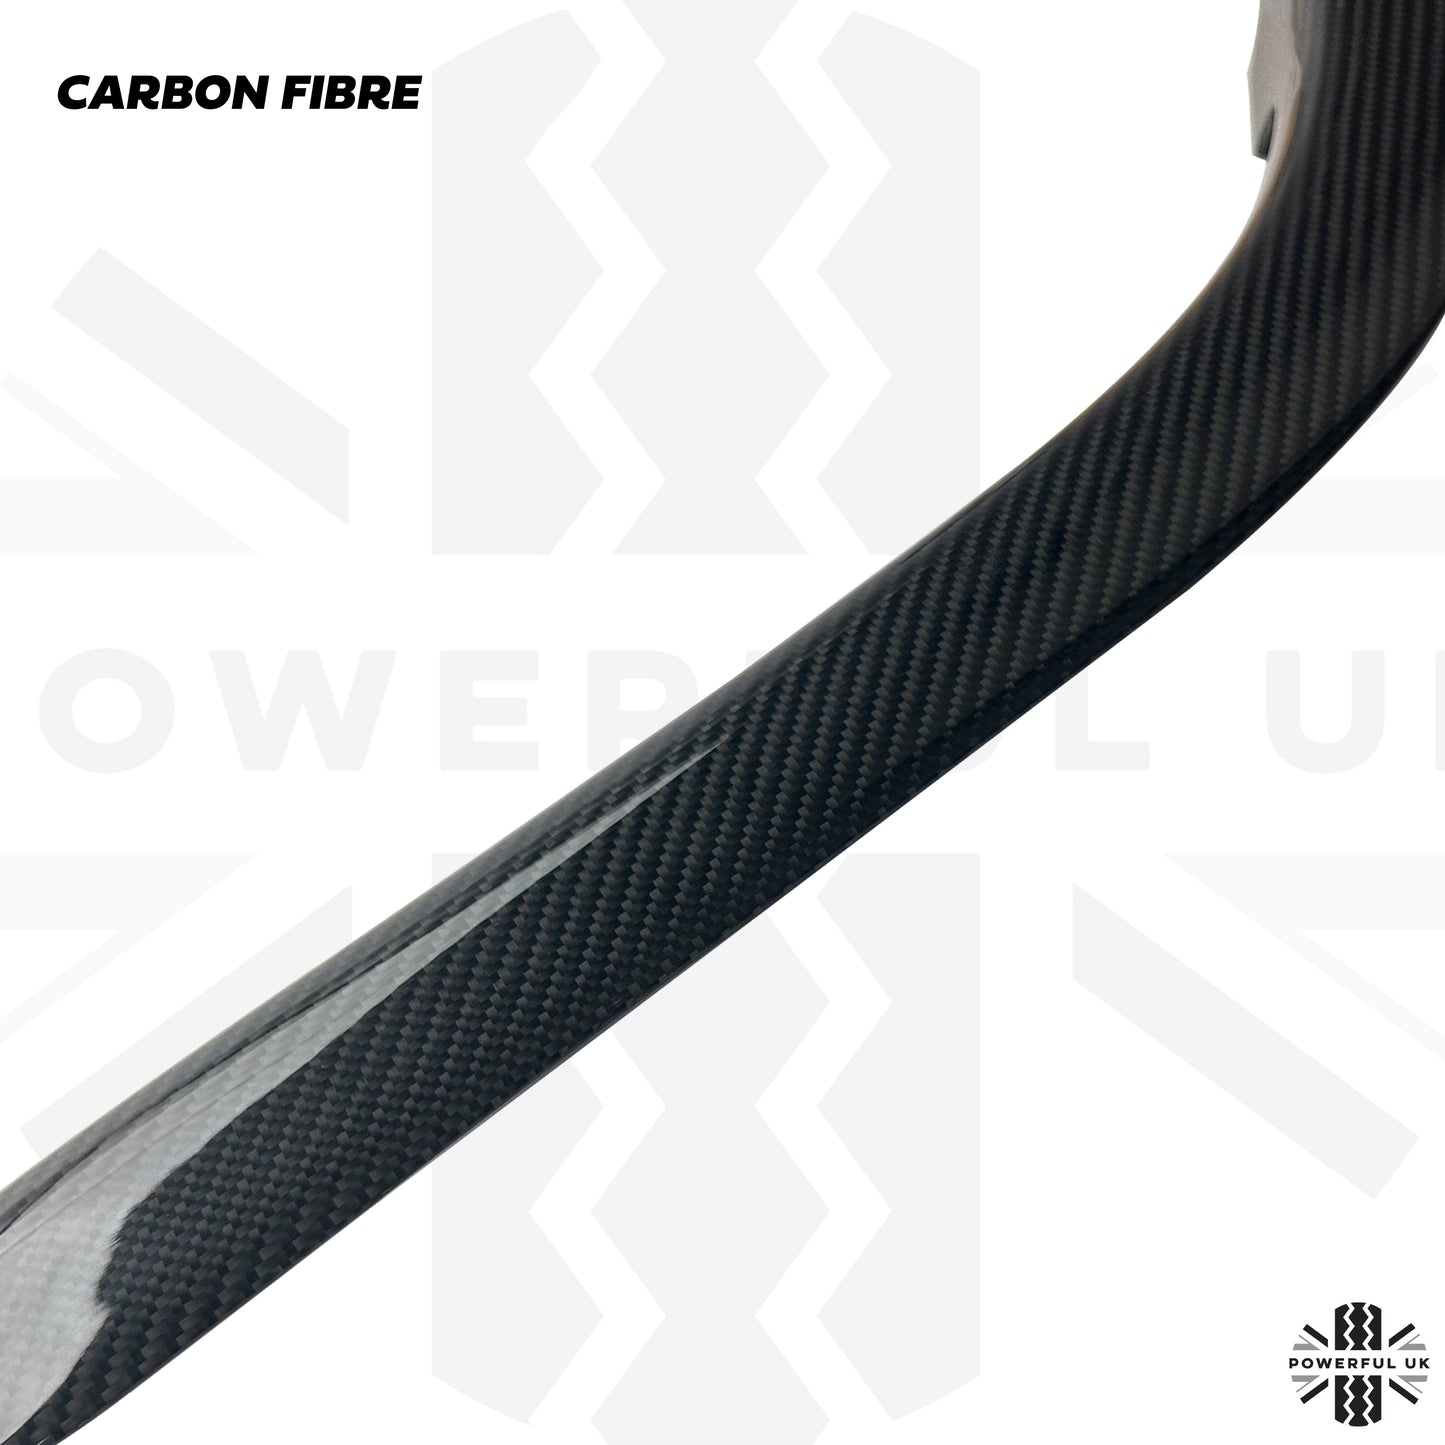 Console Surrounds (2pc) - Black Carbon Fibre for Range Rover Sport 2010